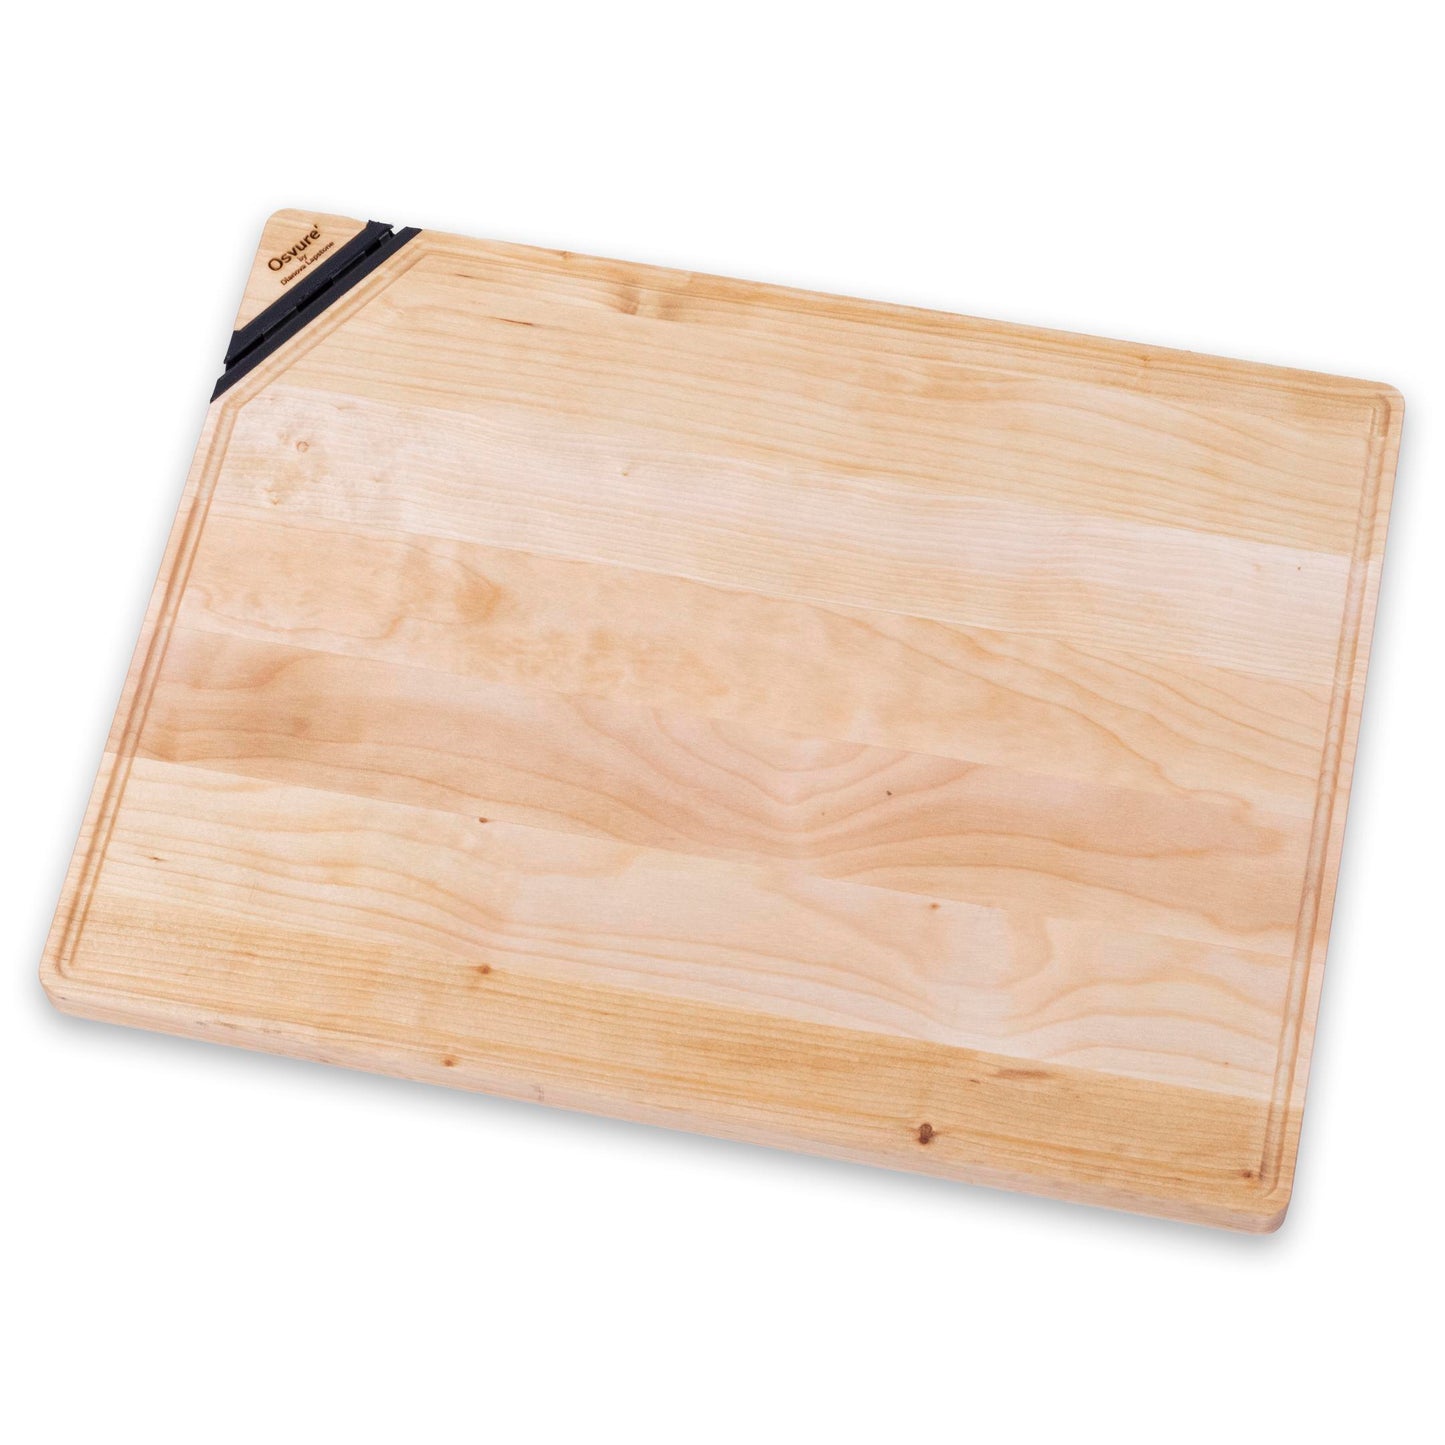 Osvure' Birch Chopping Board